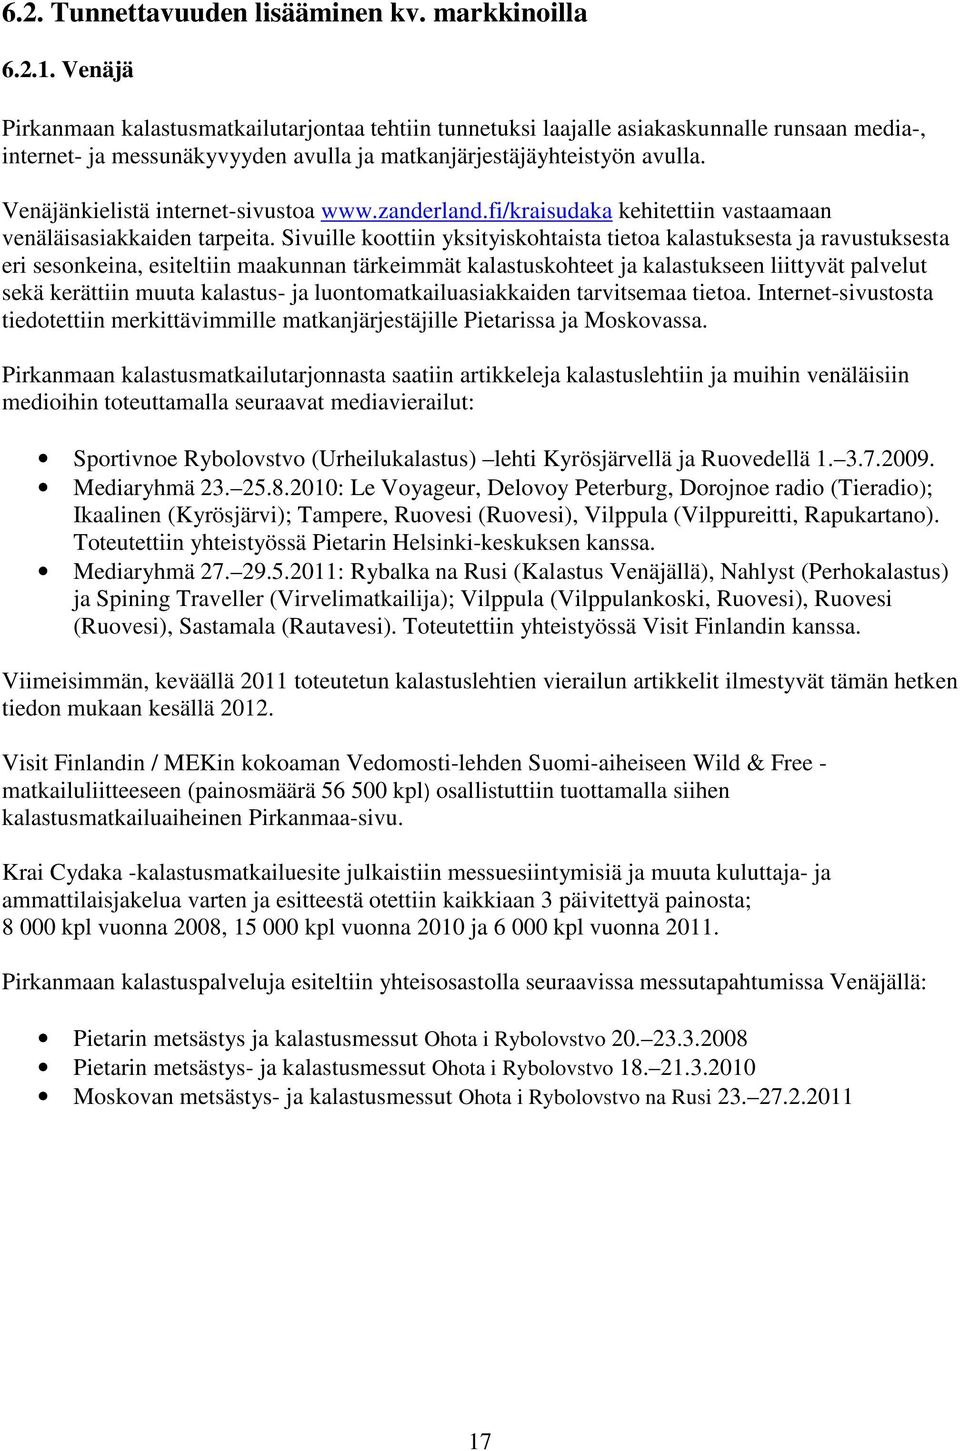 Venäjänkielistä internet-sivustoa www.zanderland.fi/kraisudaka kehitettiin vastaamaan venäläisasiakkaiden tarpeita.